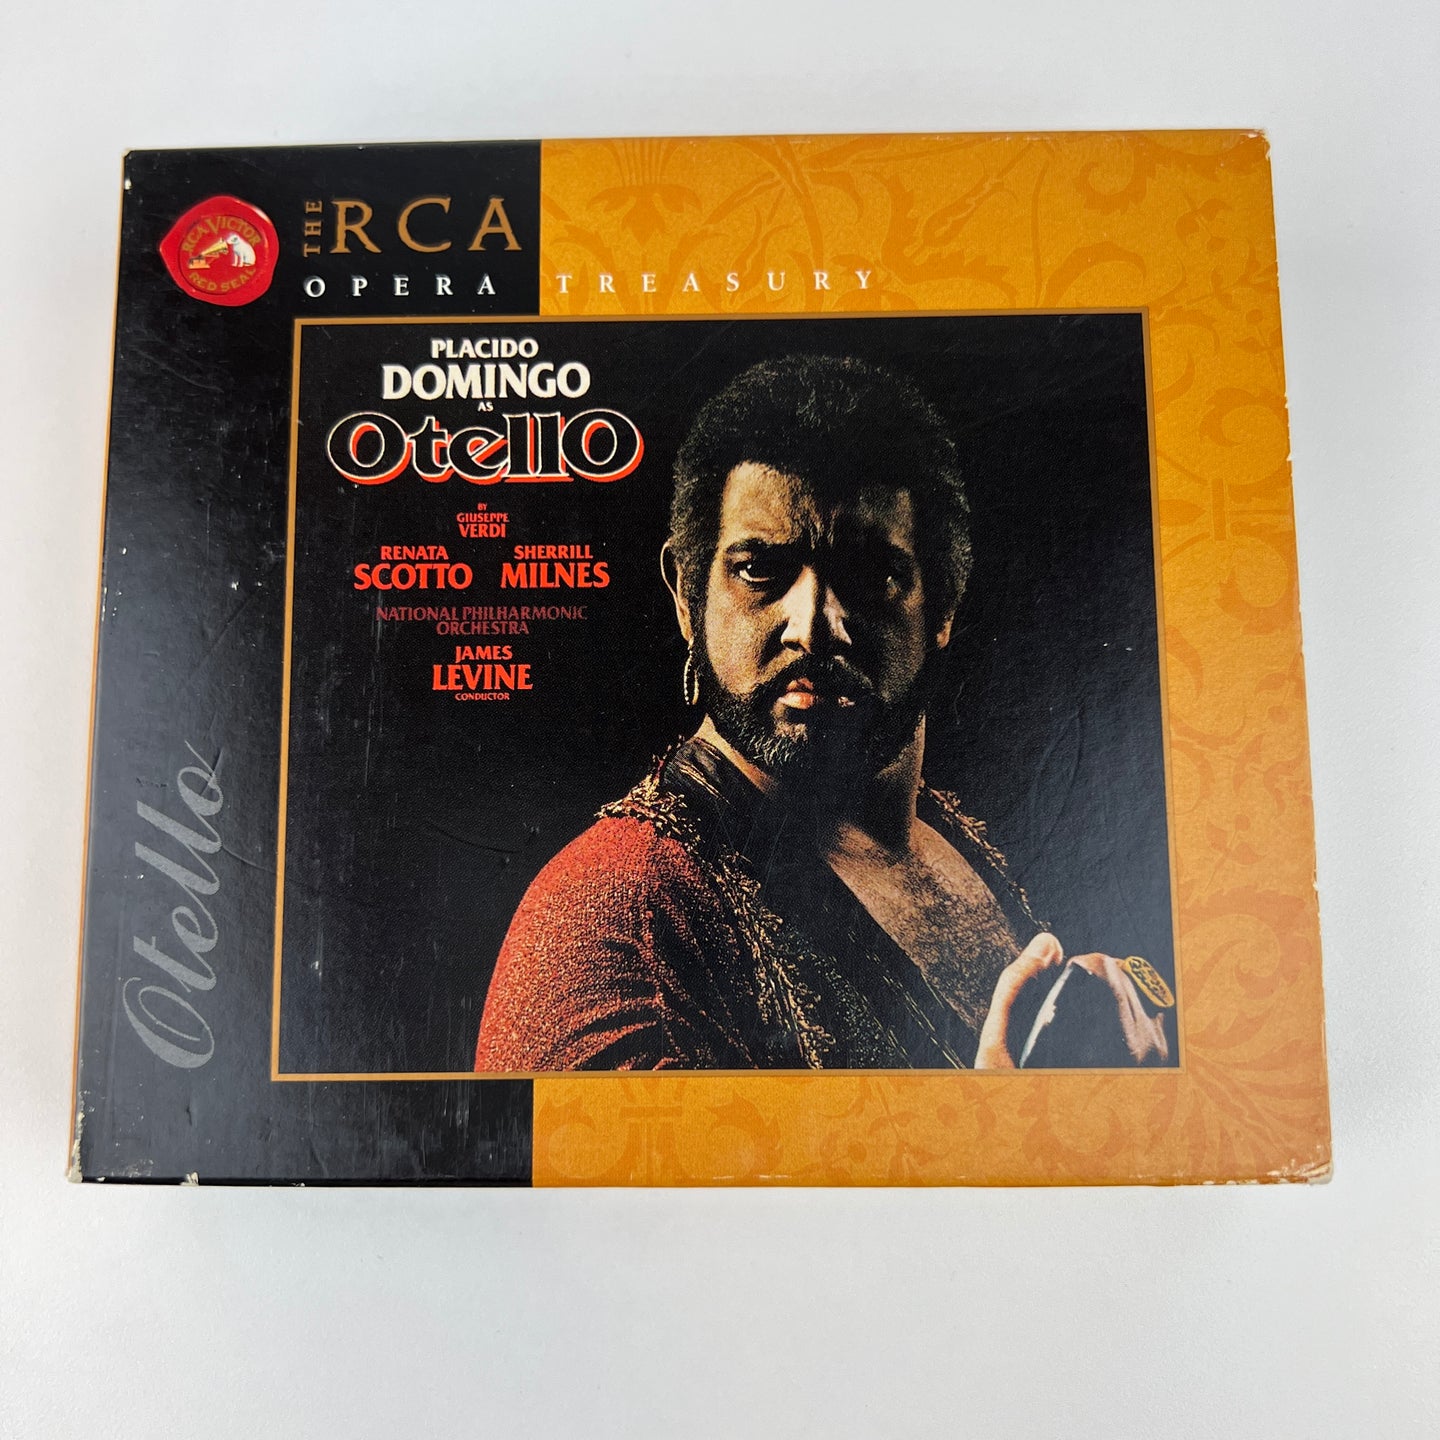 Placito Domingo as Otello 2 CD Set